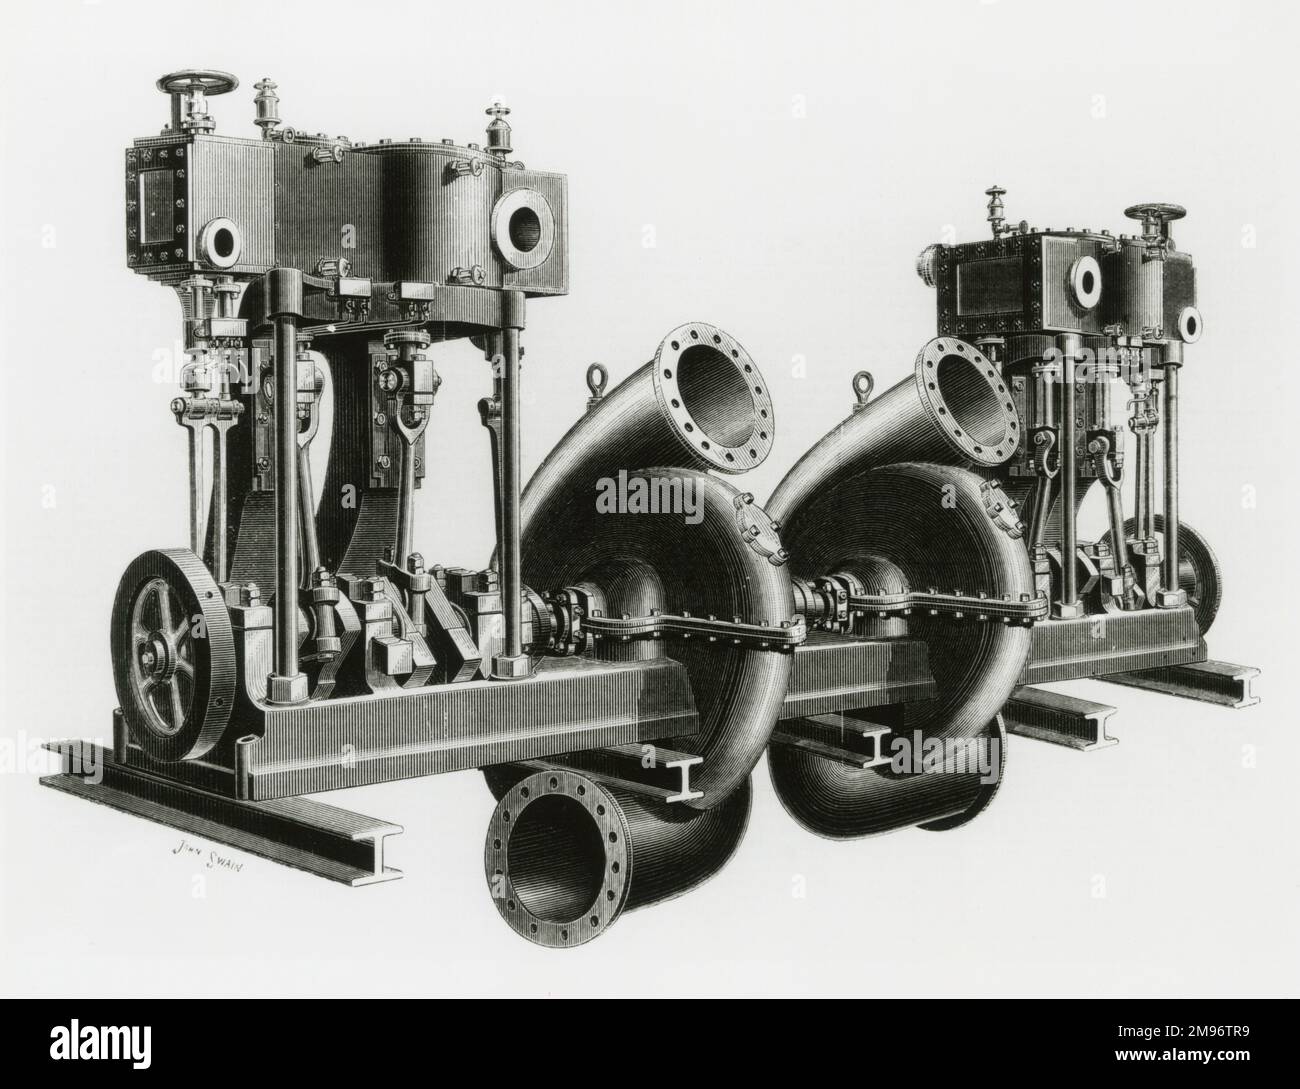 Moteurs de pompage centrifuges par W H Allen & Co., Londres Banque D'Images